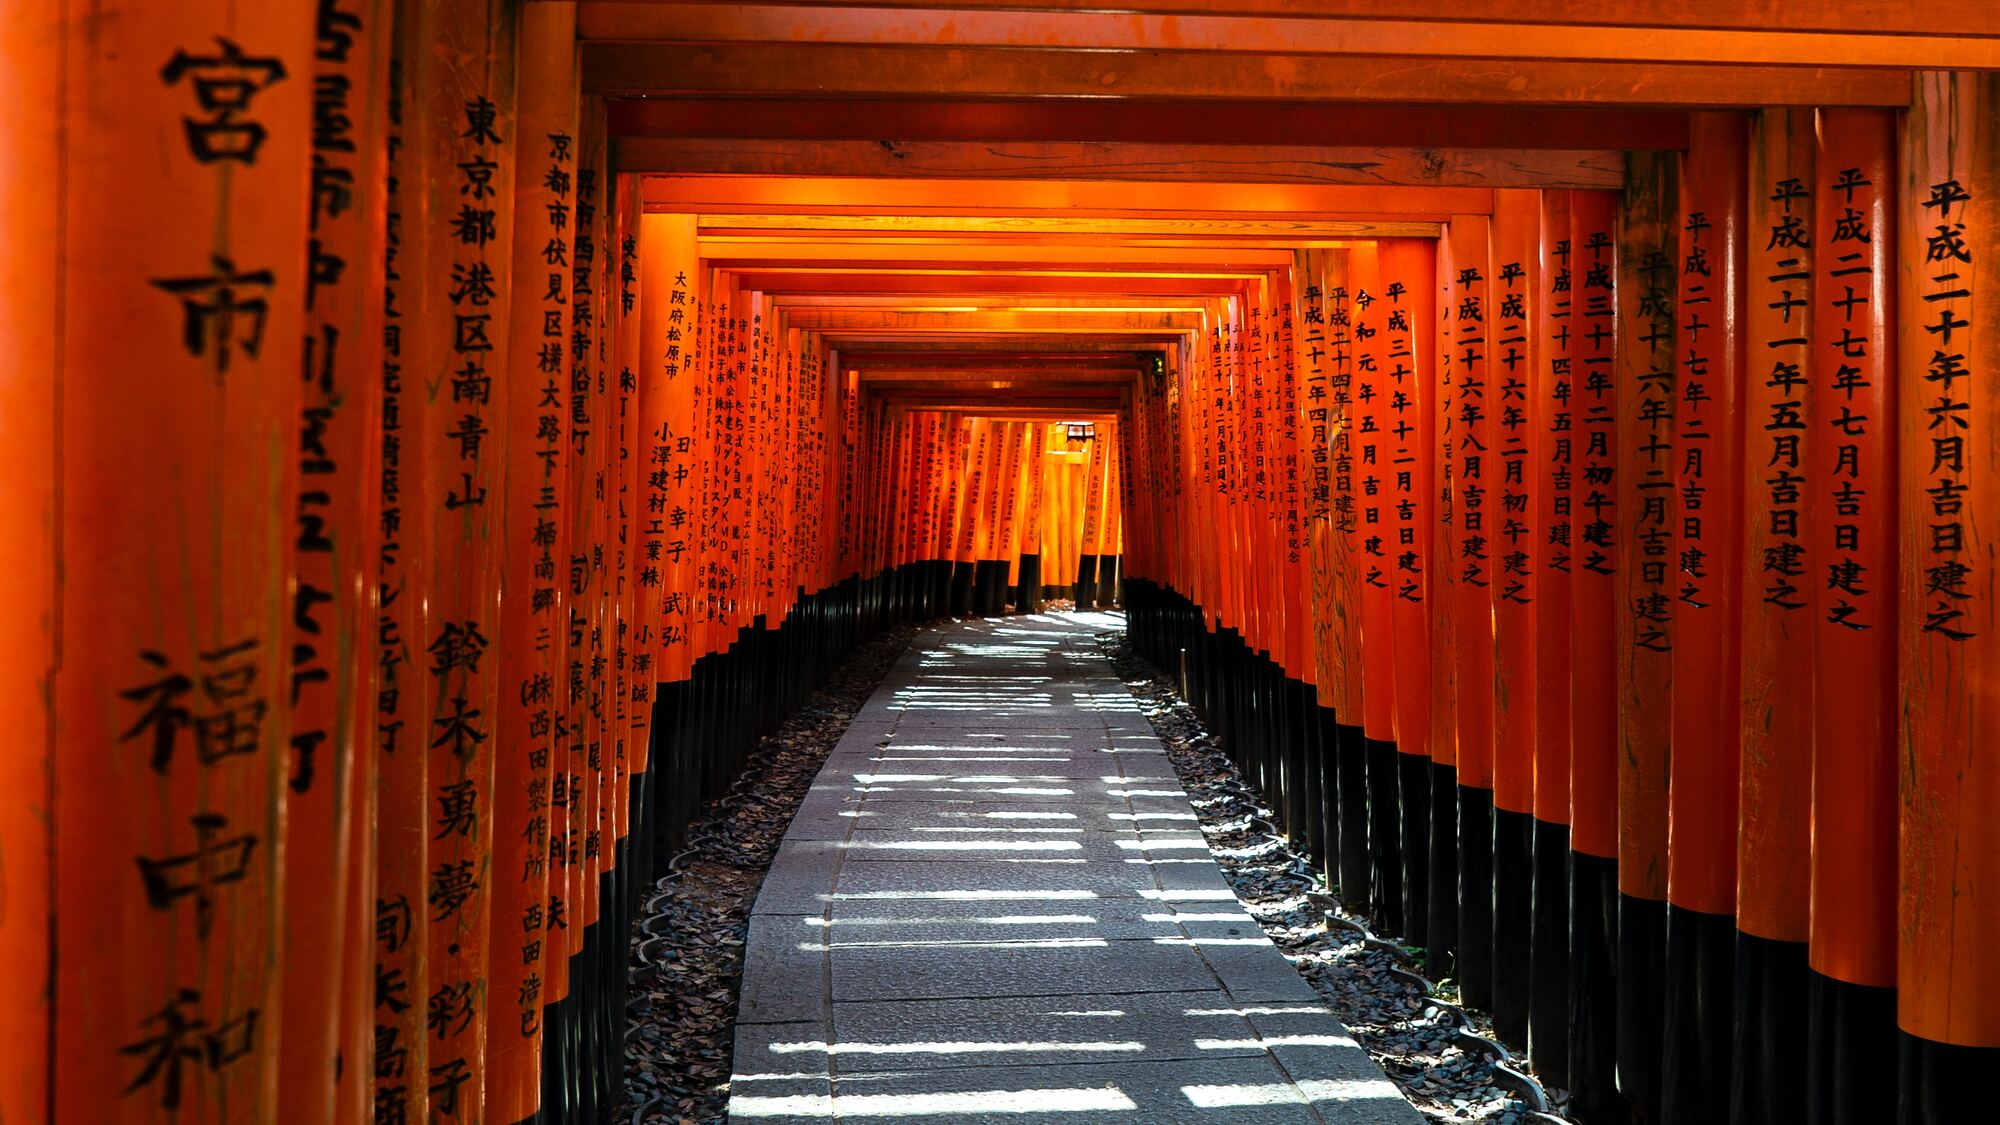 【伏見稲荷大社】京都観光の代名詞的な朱塗りの鳥居がズラリと連なる「千本鳥居」は有名です。